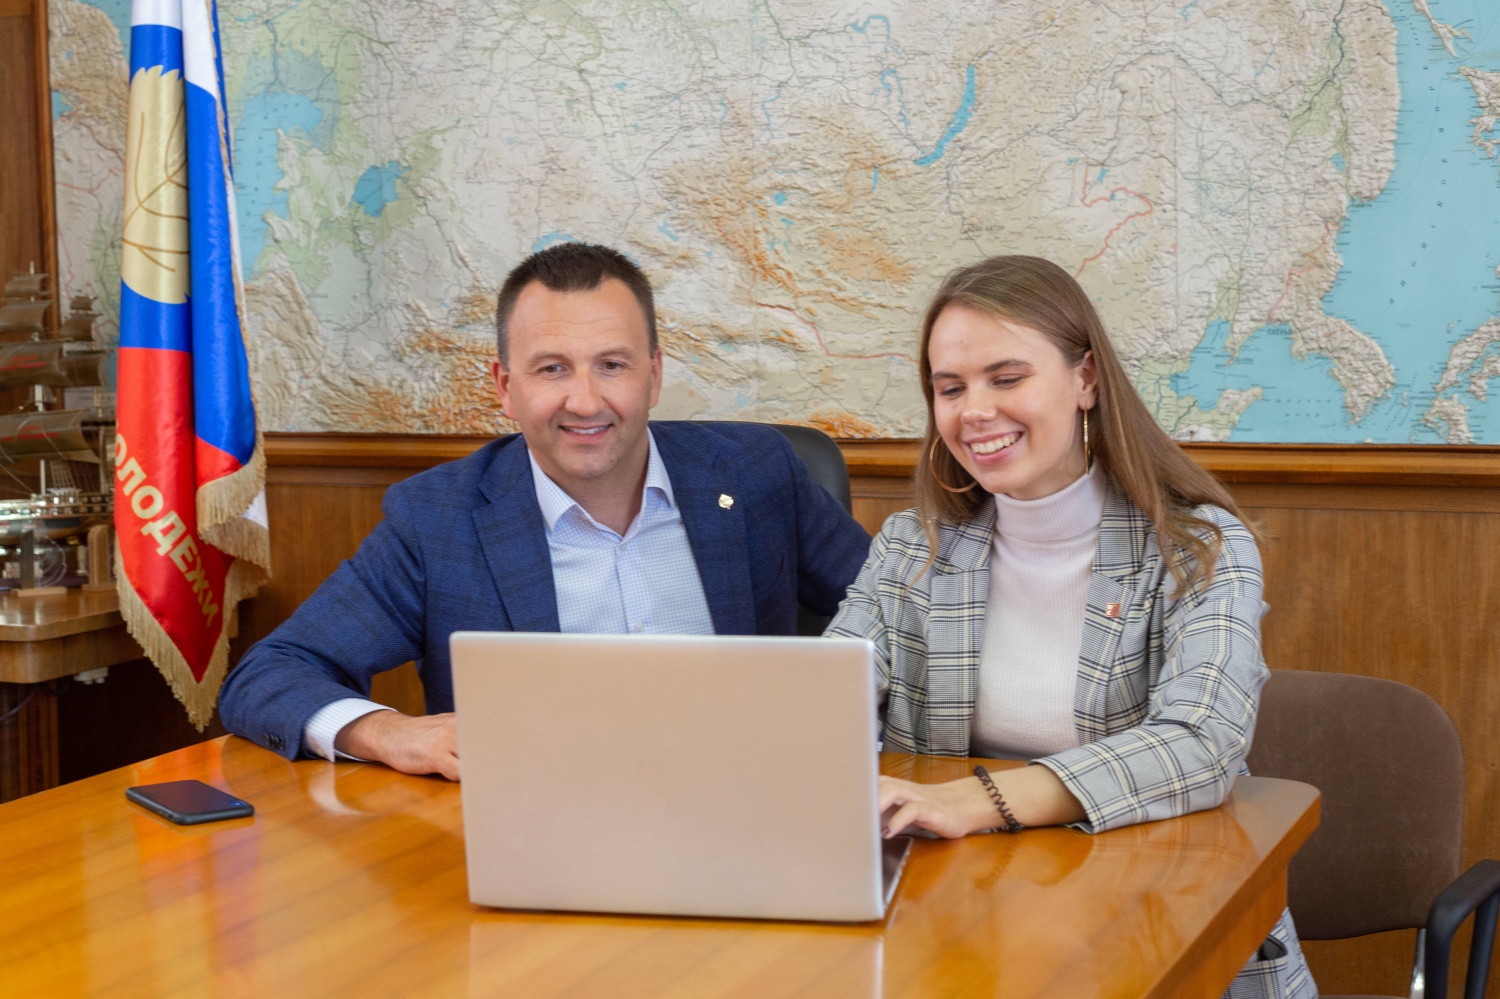 Представитель России впервые вошёл в состав руководства Европейской Ассоциации Молодежных Карт (EYCA)